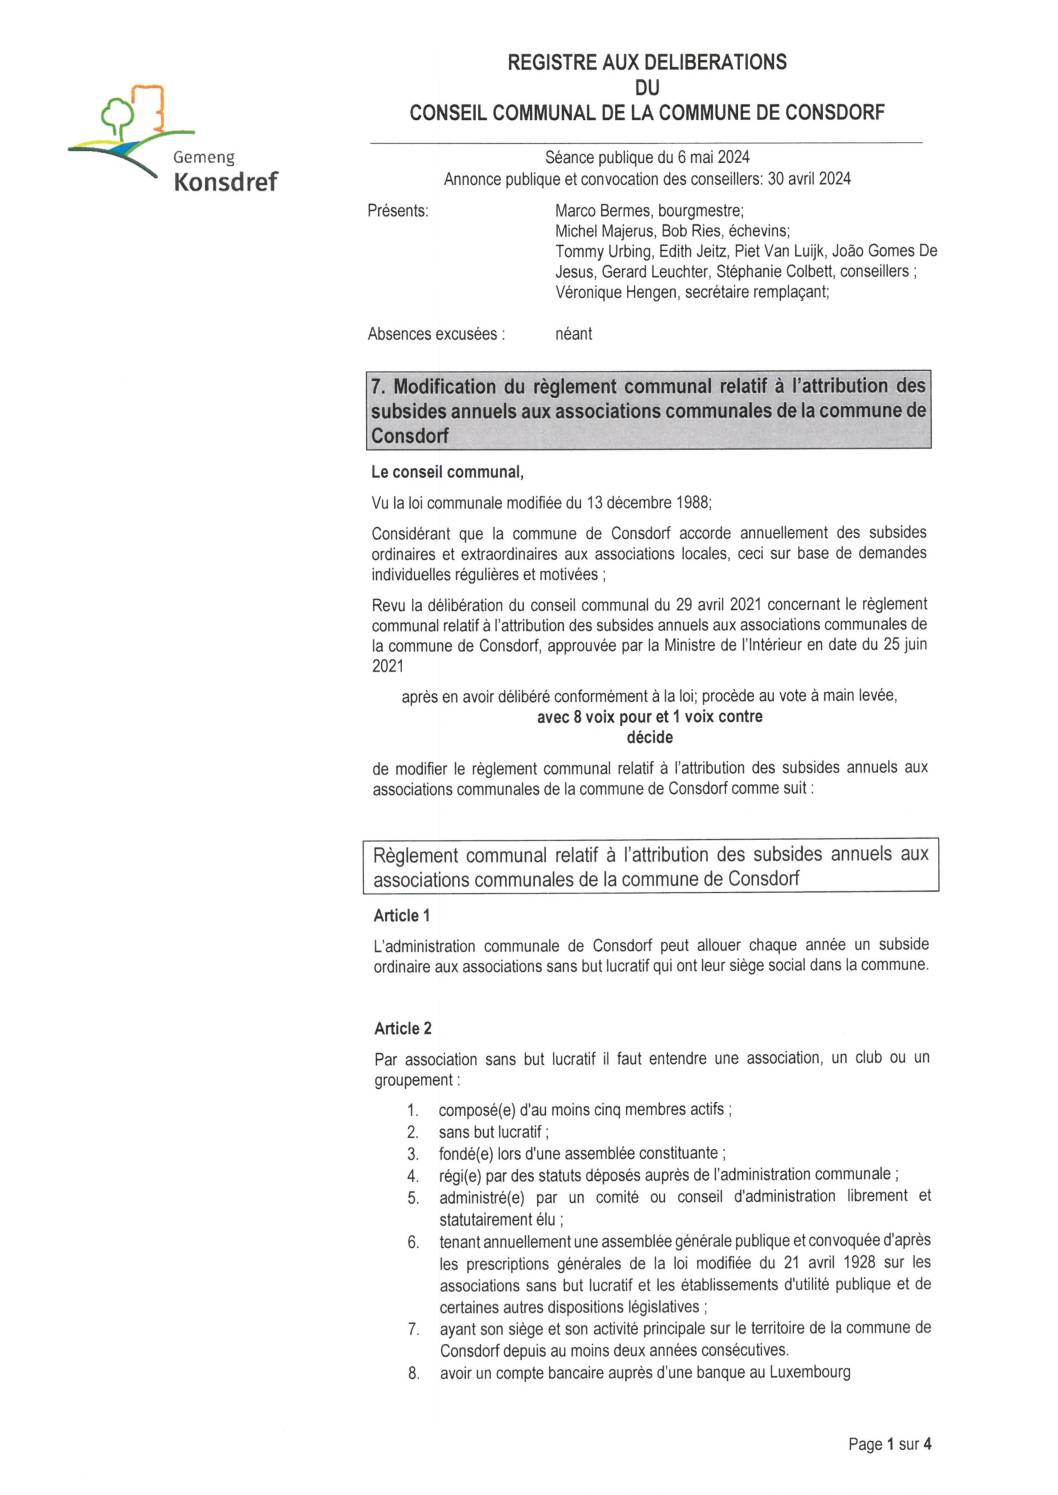 Règlement communal relatif à l'attribution des subsides annuels aux associations communales de la commune de Consdorf